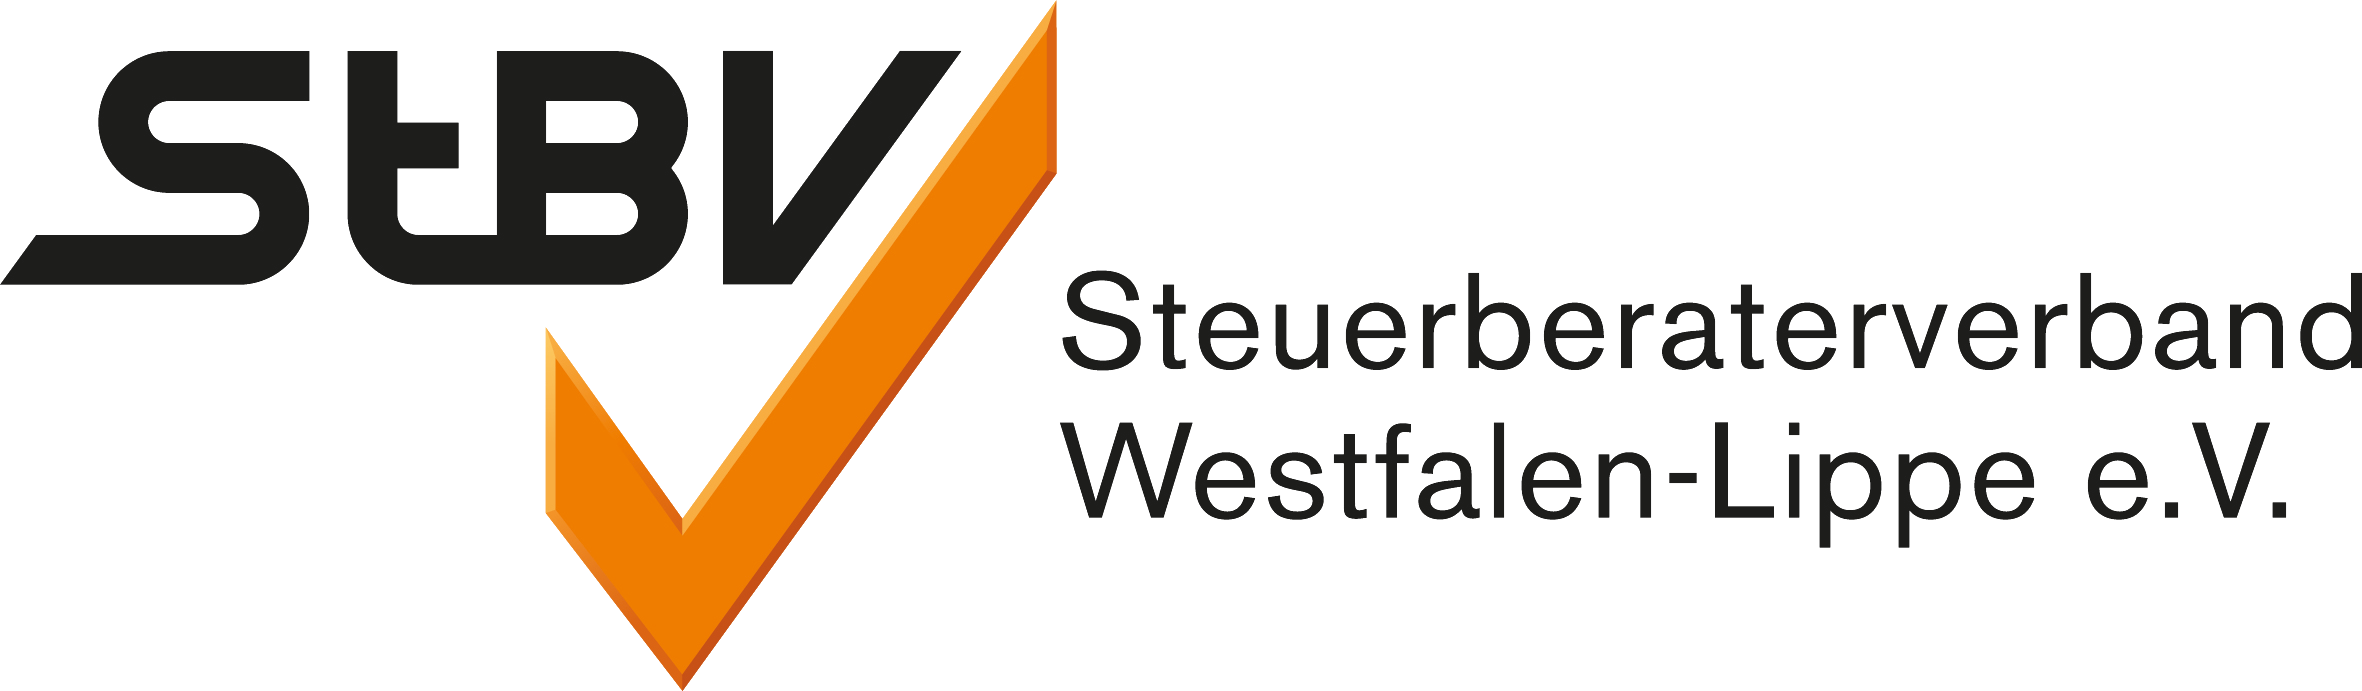 Steuerbüro Windmann Mitgliedschaft Steuerberaterverband Westfalen-Lippe